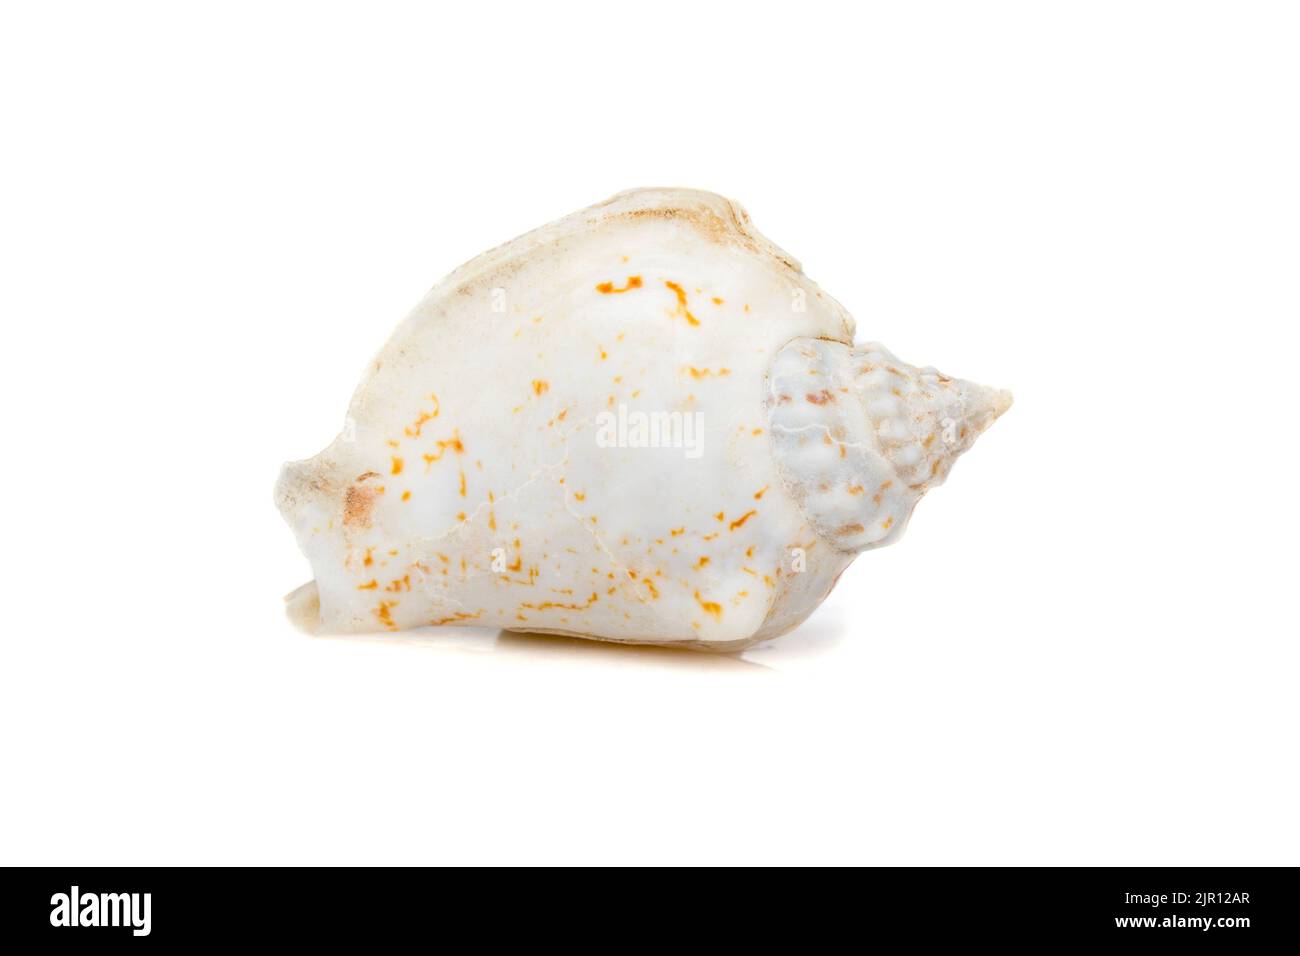 Immagine di conchiglie gobbate (Gibberulus gibbosus) su sfondo bianco. Animali sottomarini. Conchiglie marine. Foto Stock